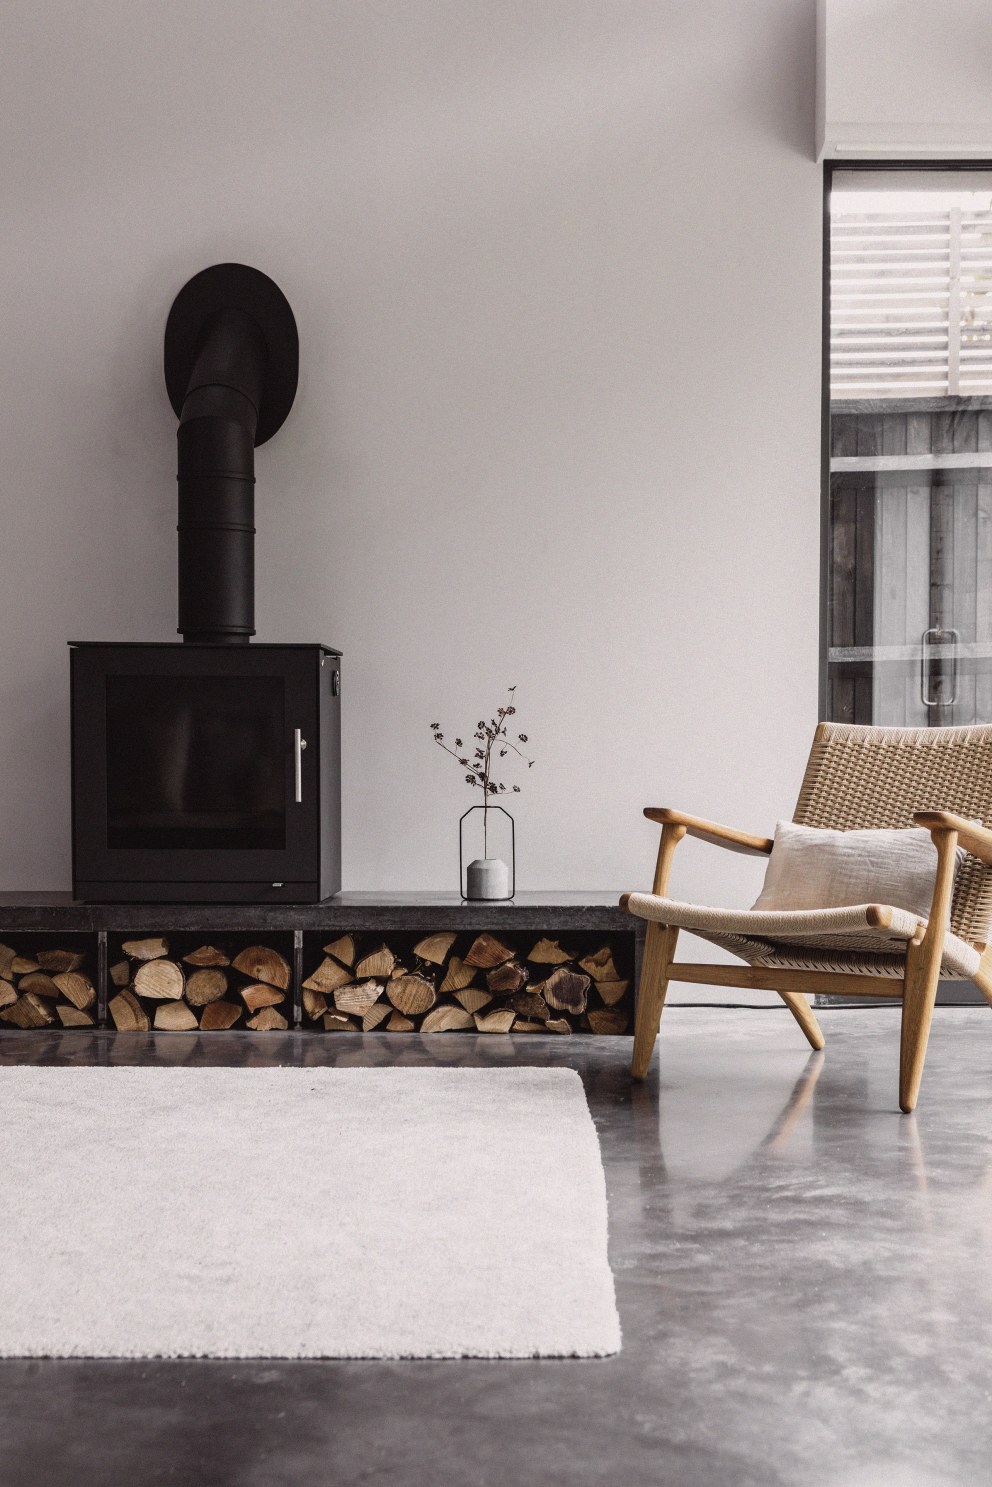 Teddington - New build home | Wood burner, contemporary | Interior Designers